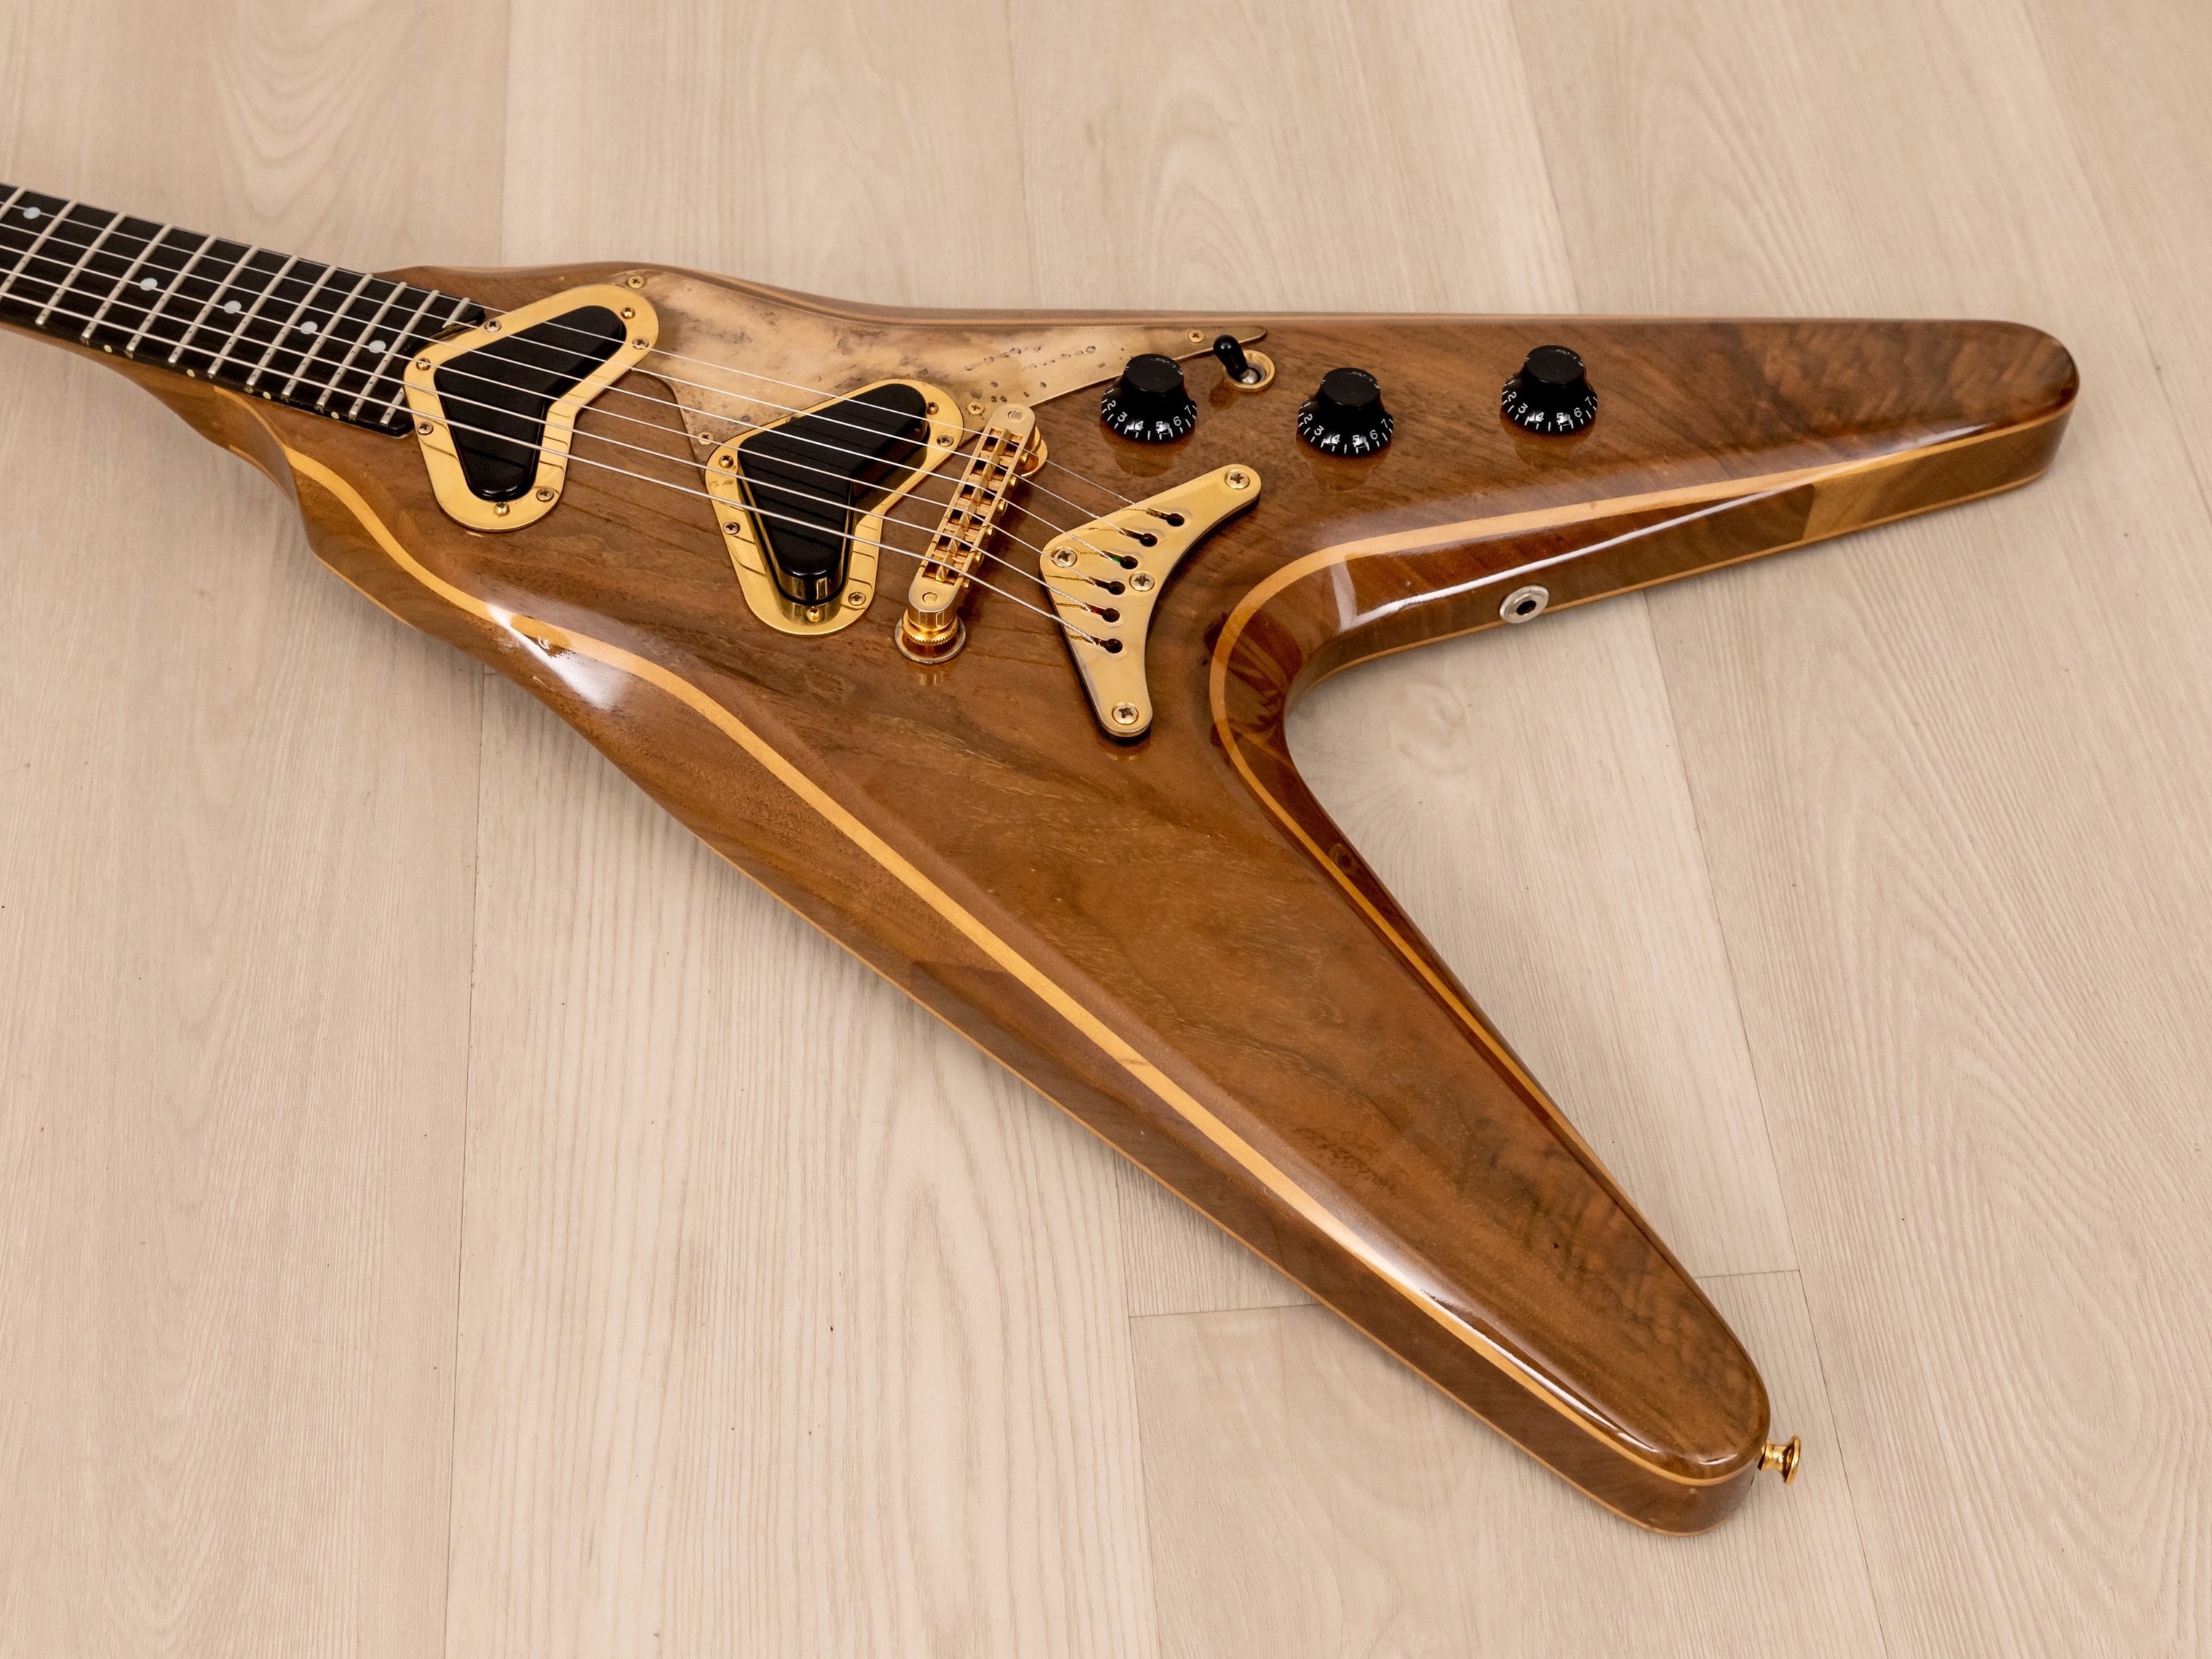 1981 Gibson Flying V-II V2 Vintage Electric Guitar, Tim Shaw-Designed w/ Boomerang Pickups, Case